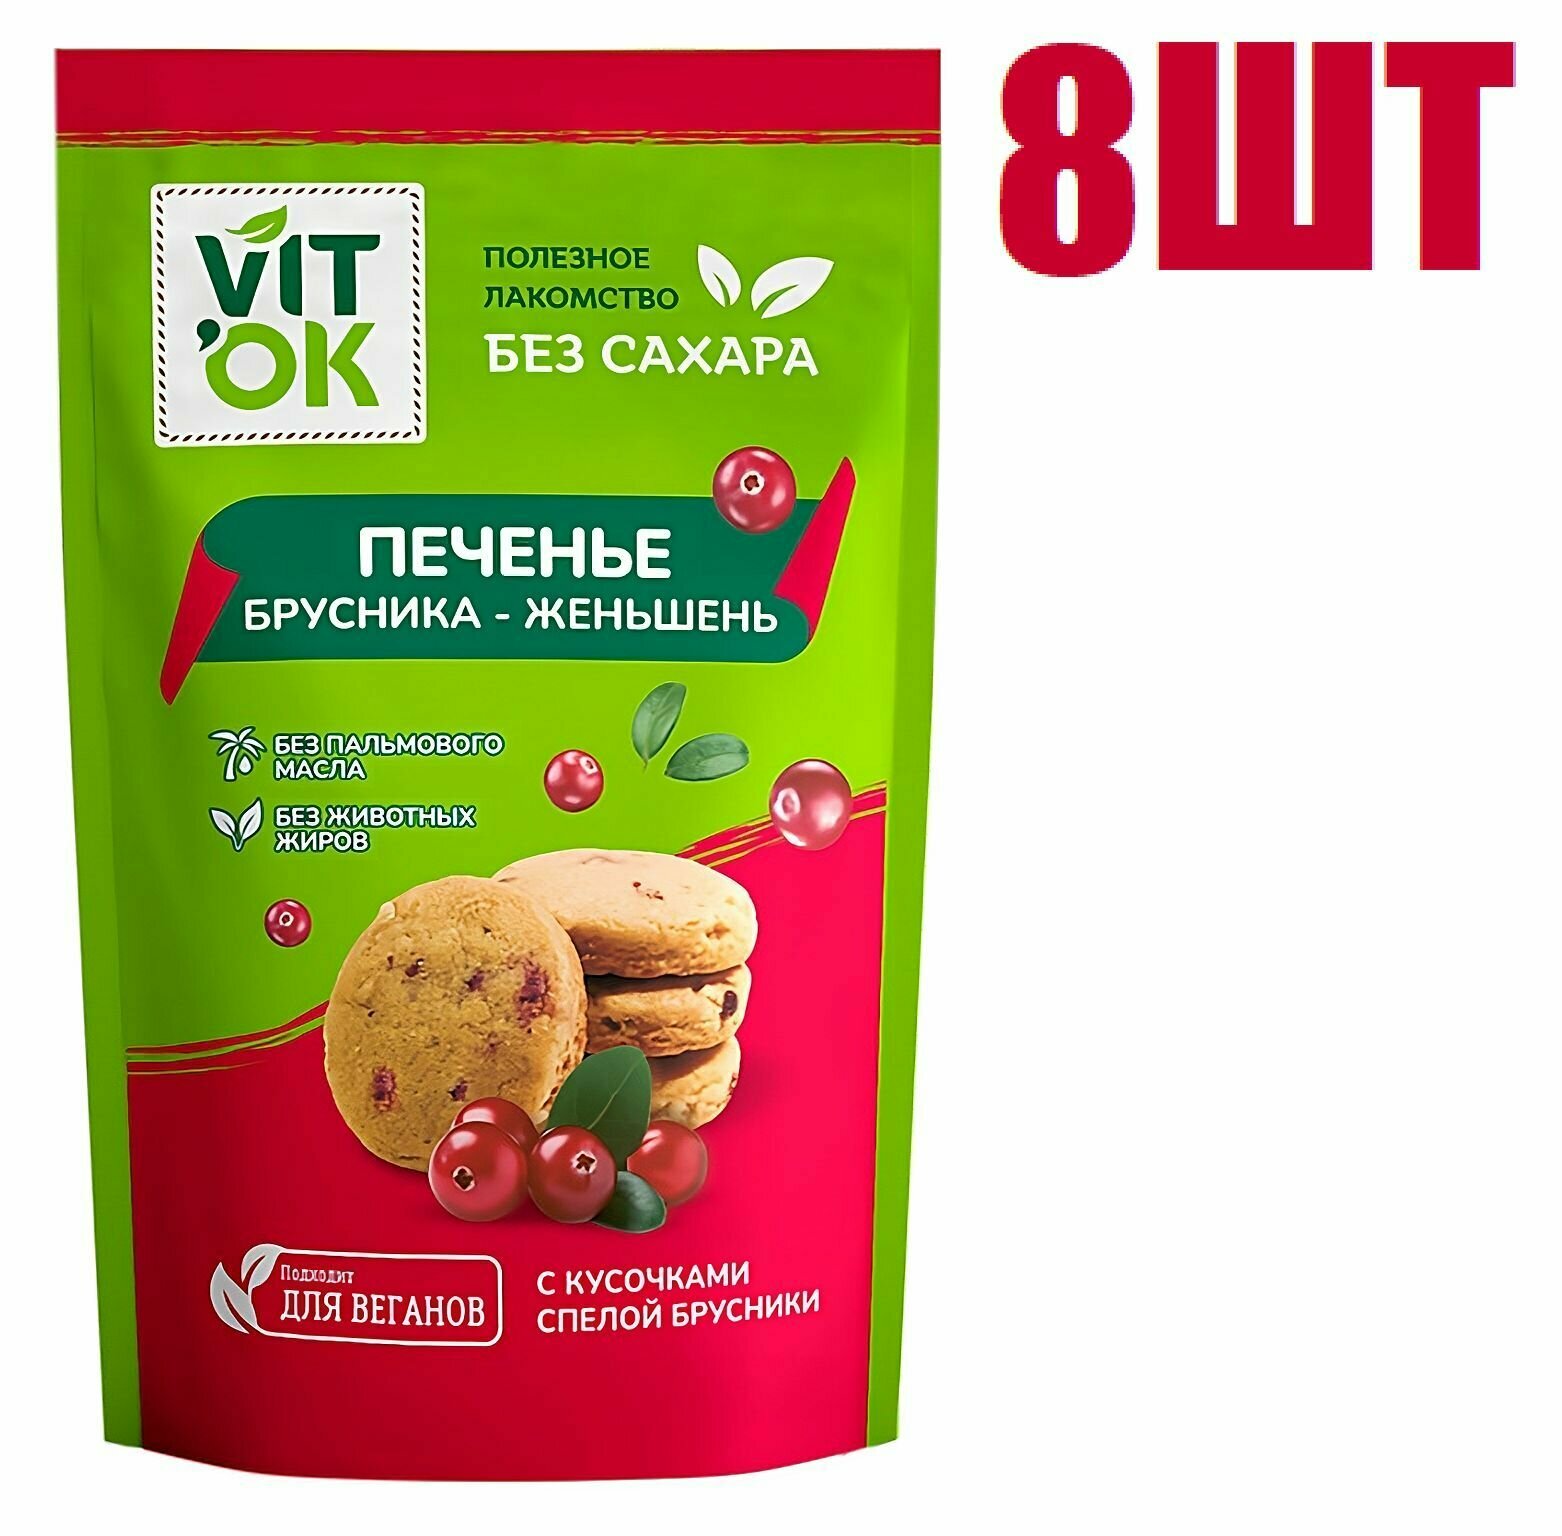 Печенье, "Vitok", песочное, со вкусом брусника-женьшень, 100г 8 шт - фотография № 1